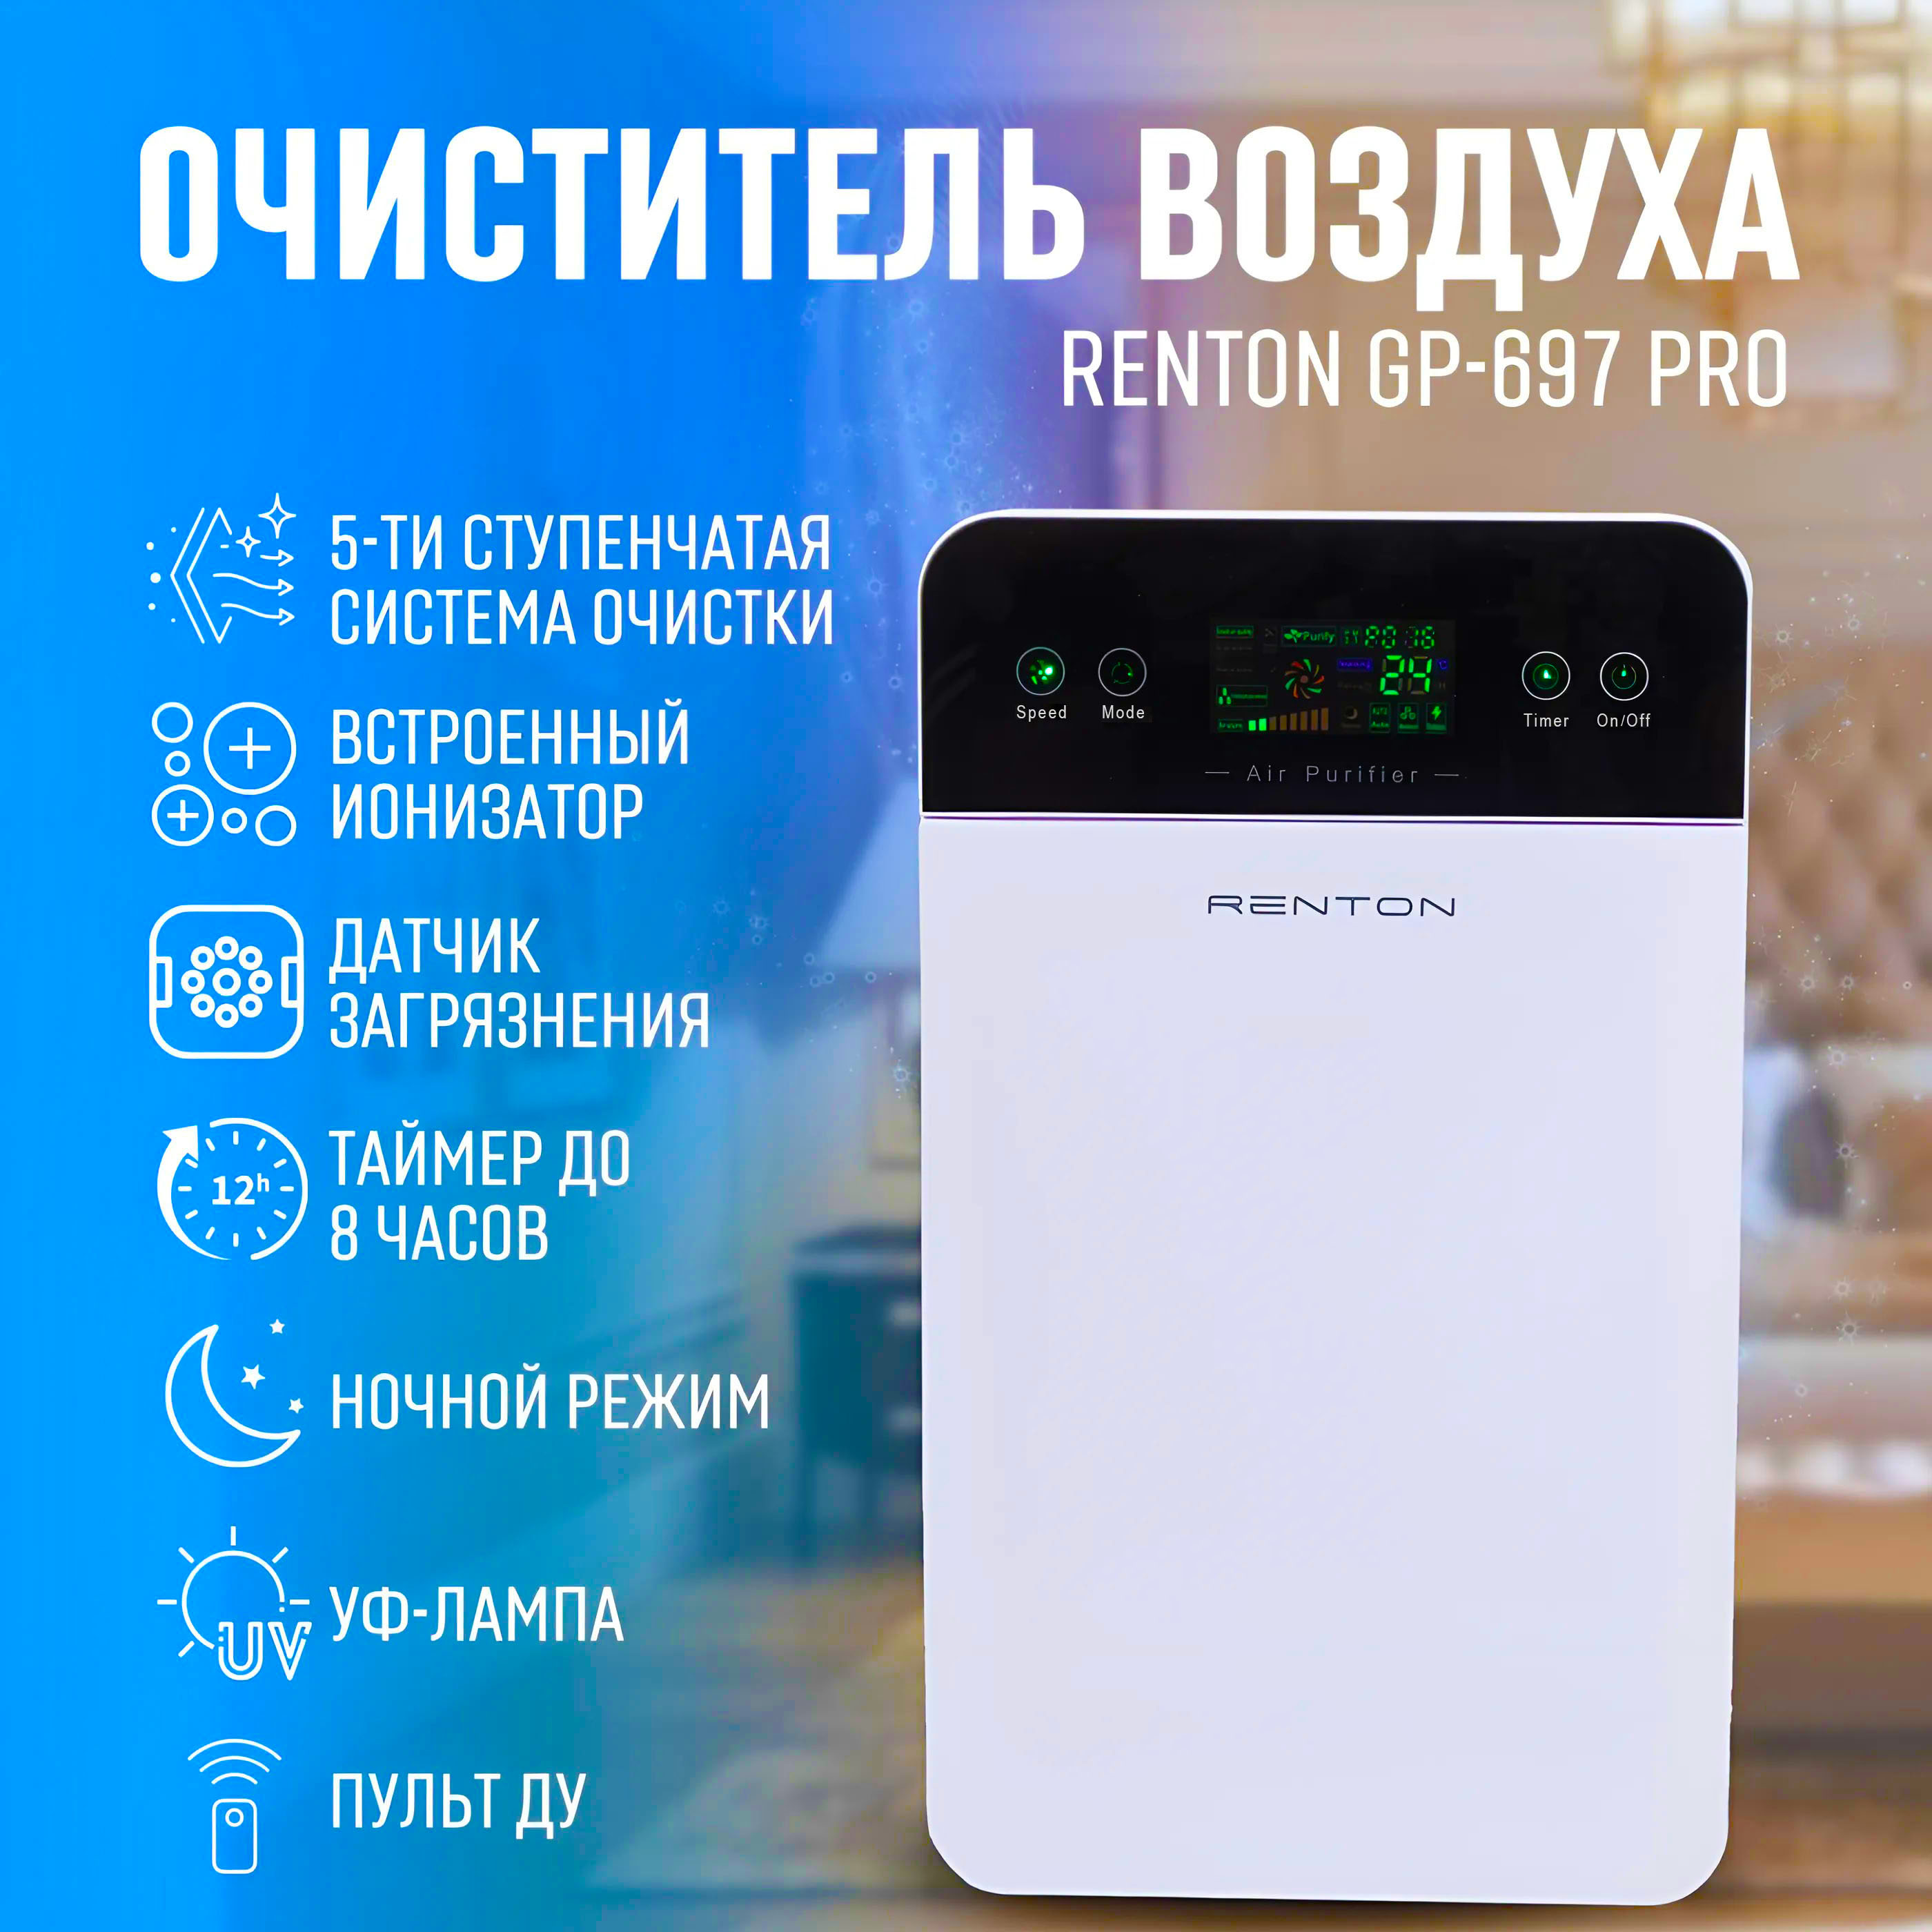 Очиститель воздуха для квартиры с ионизацией Renton GP-697 Pro очиститель воздуха fanline ve 400 белый